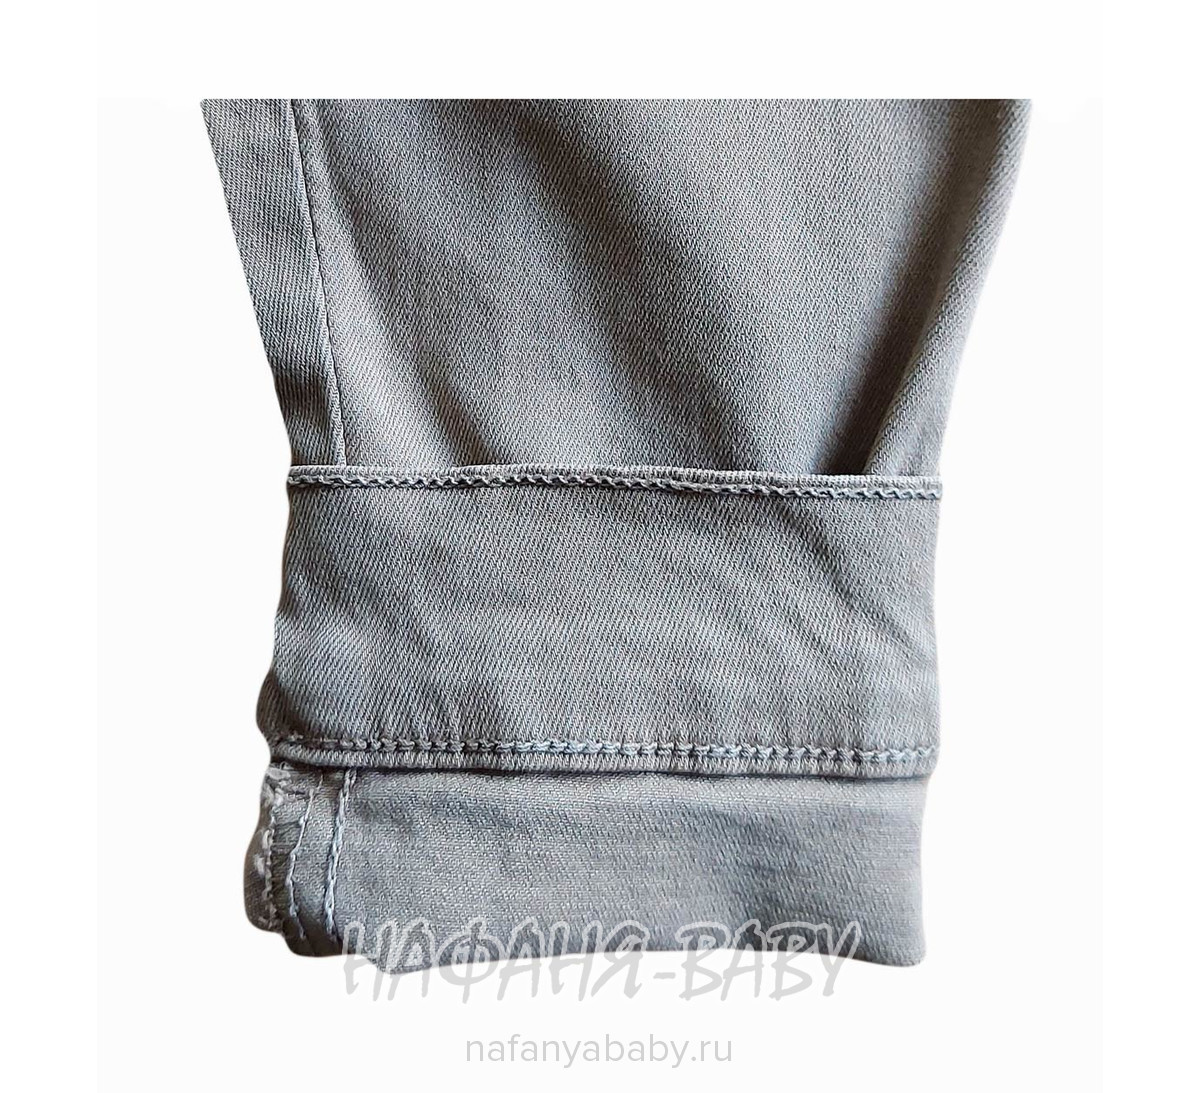 Джинсовая утепленная куртка TATI Jeans арт: 3905, 5-9 лет, 10-15 лет, цвет коричневый, оптом Турция